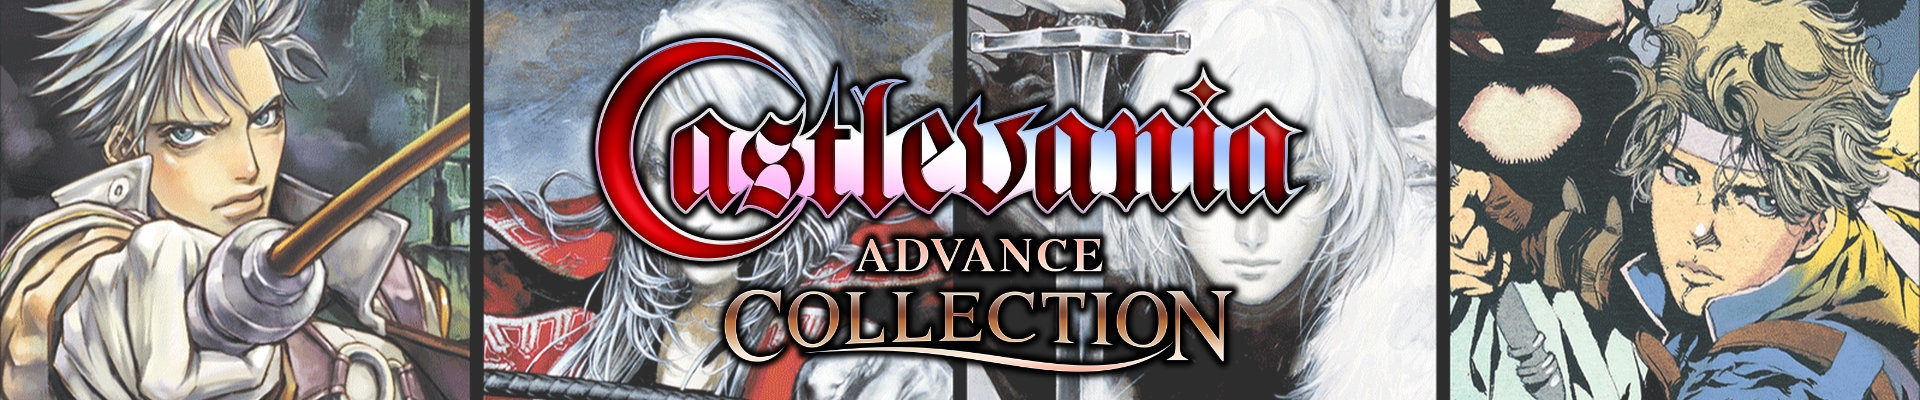 О времена: Castlevania Advance Collection